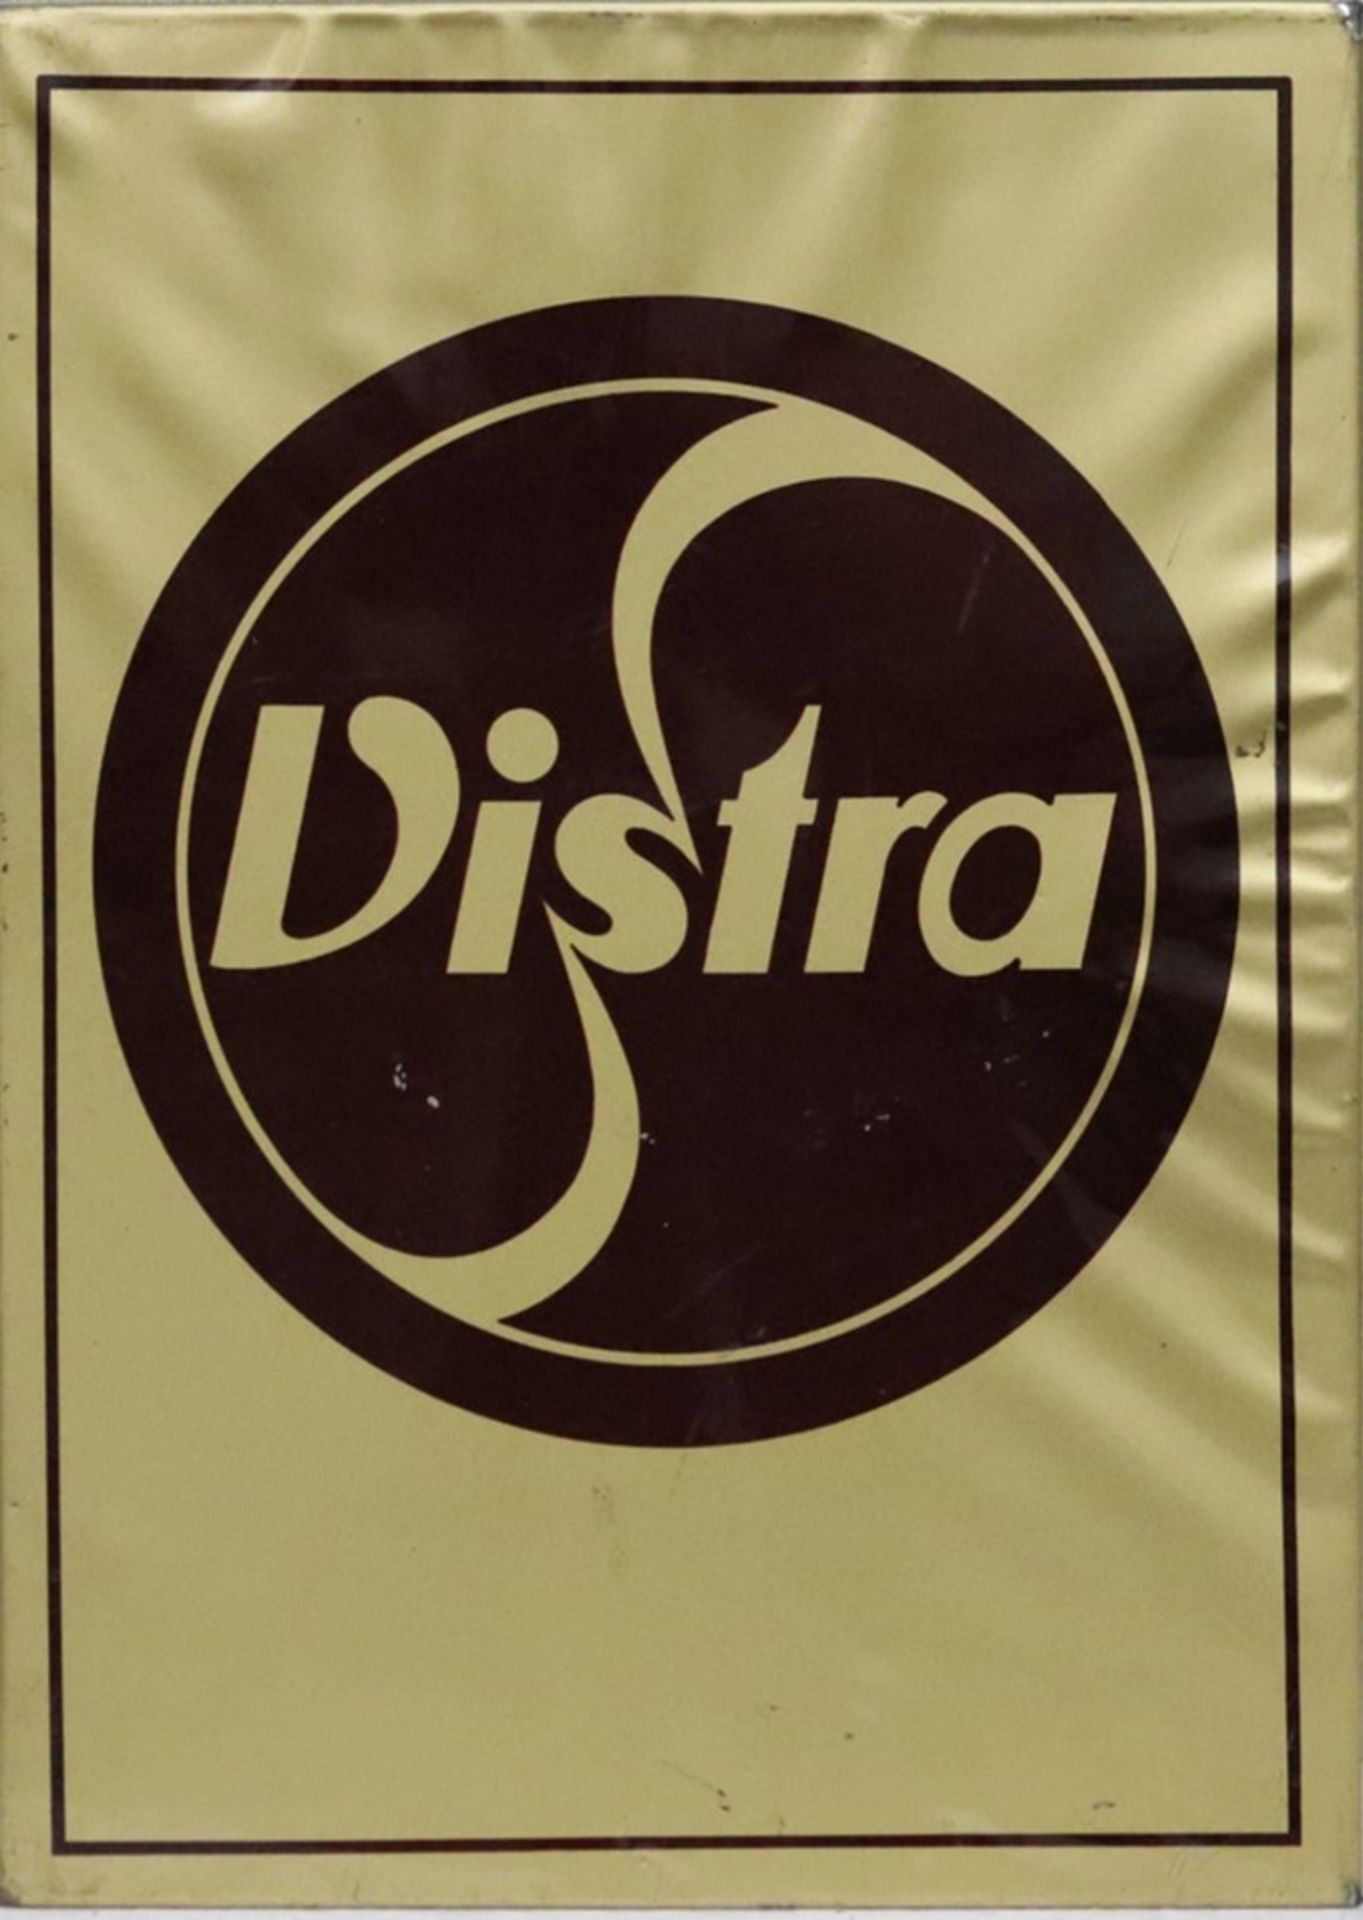 deutsche Werbung, Vistra, 60/70er Jahre,